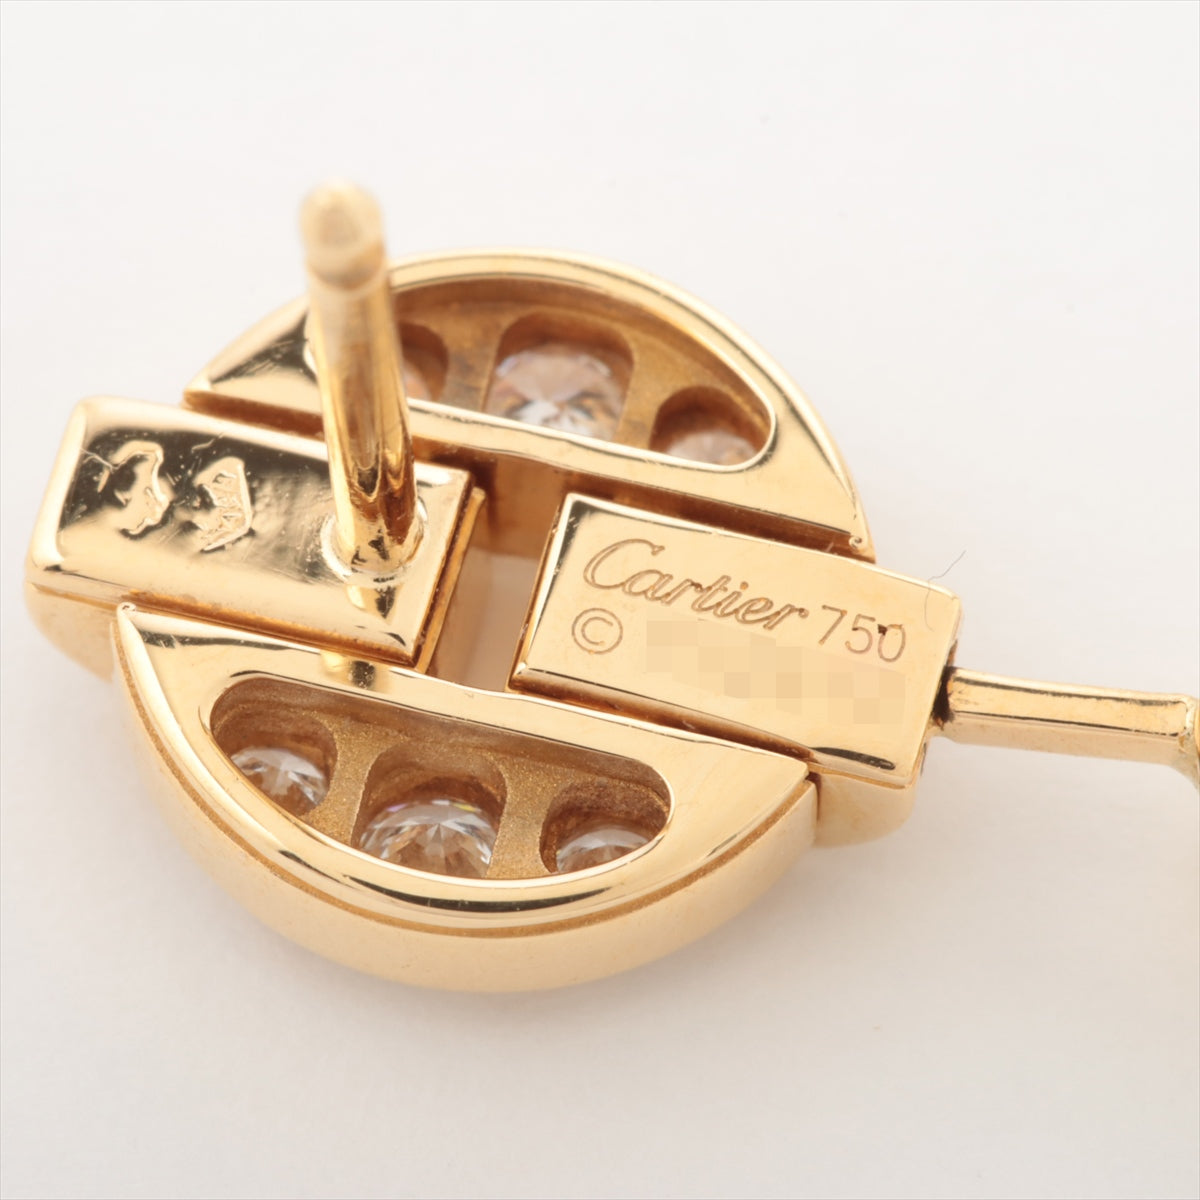 Cartier Imaria diamond Piercing jewelry 750(YG) 5.7g